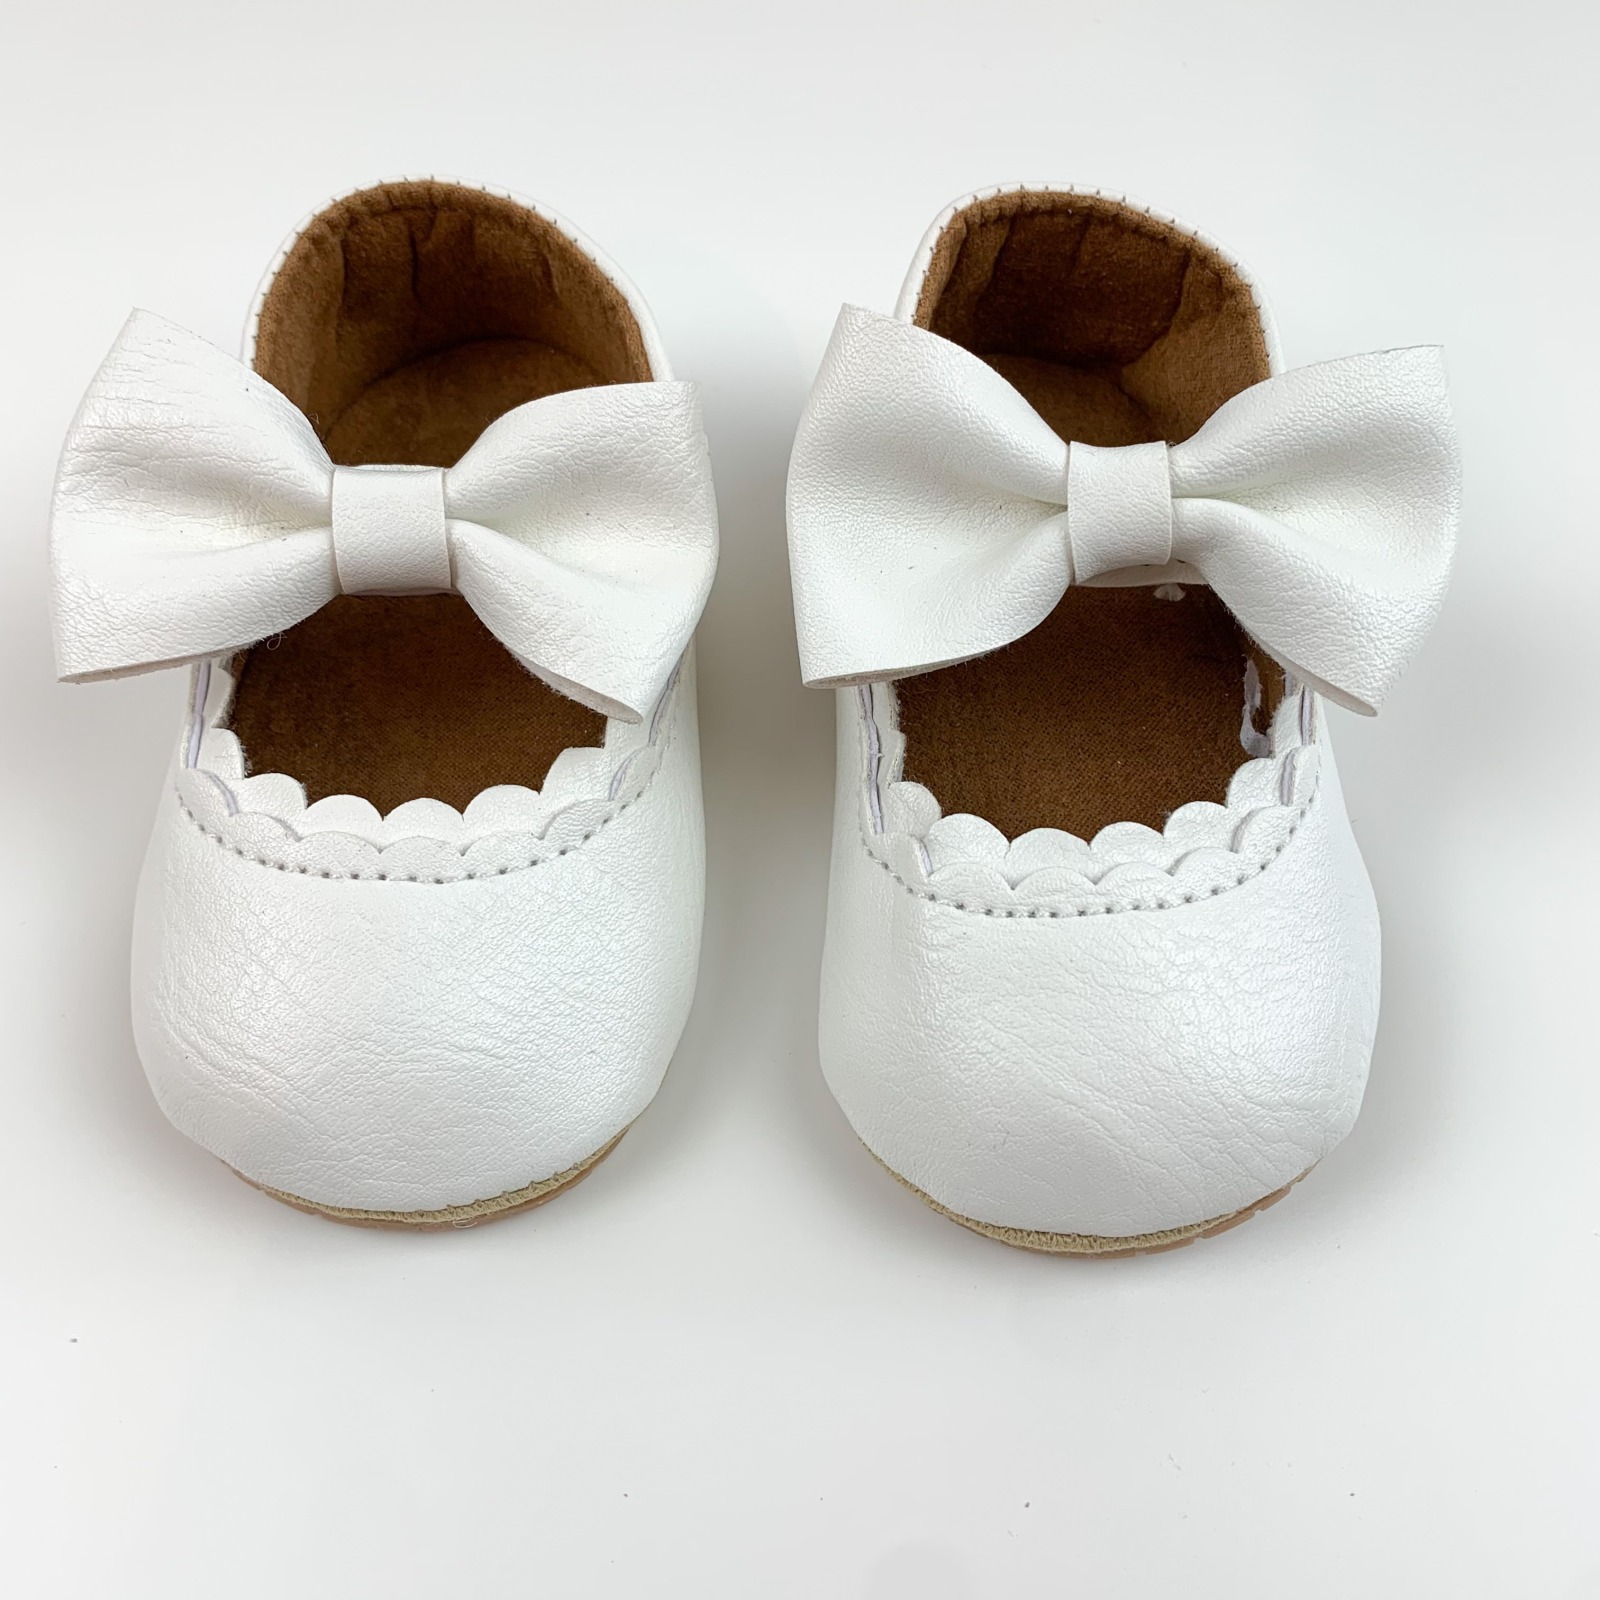 Schuhe - Weiß - 0 bis 6 Monate 10,5 cm 2